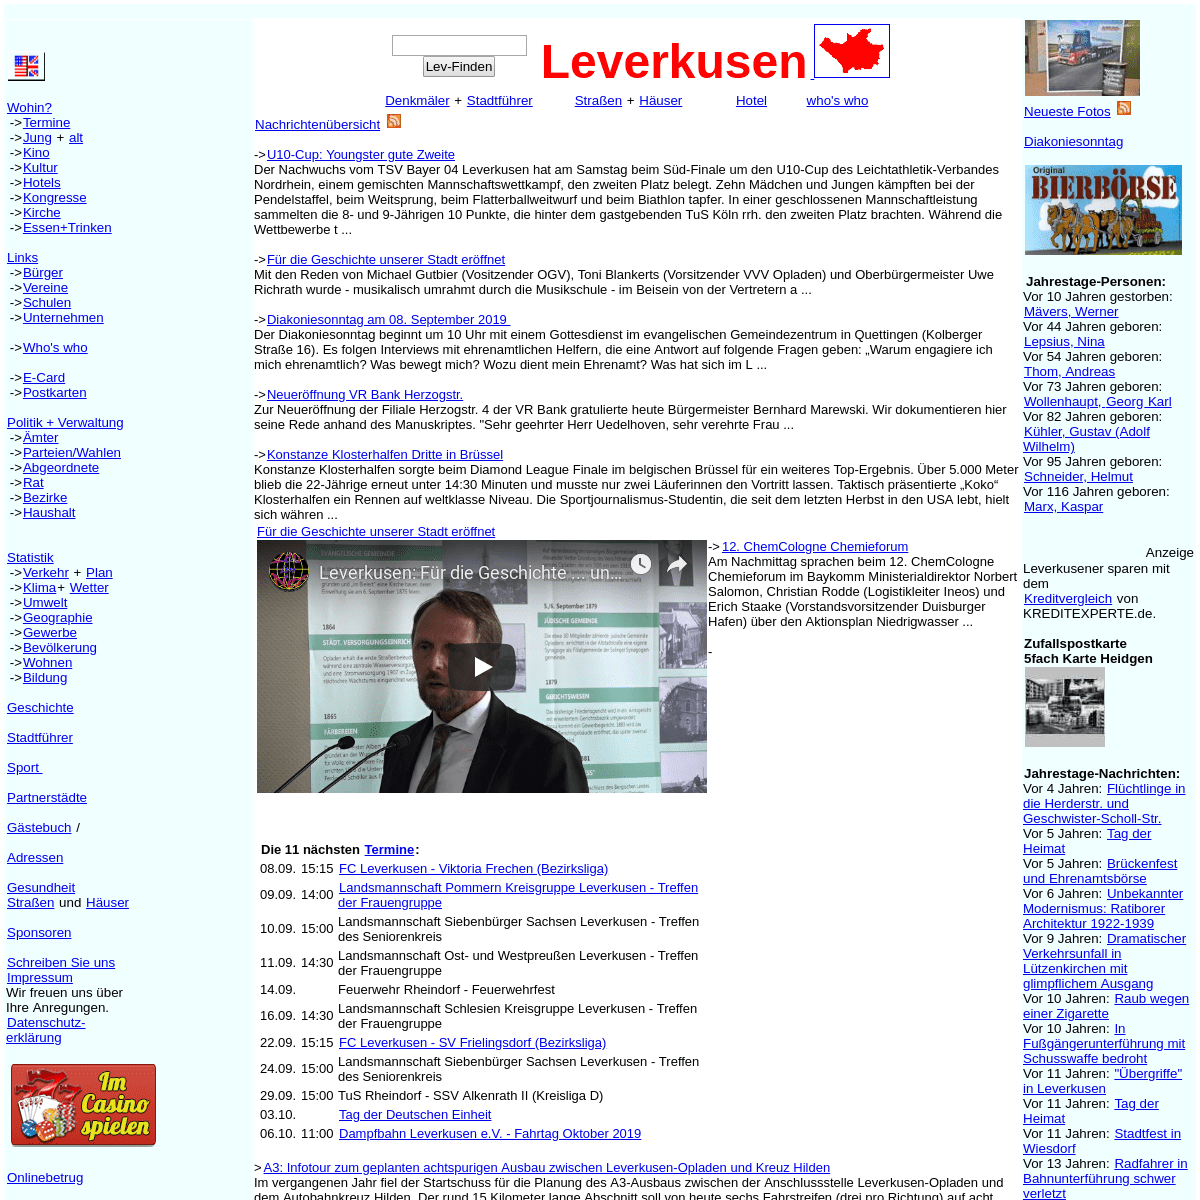 Leverkusen: Willkommen bei der Internet Initiative www.leverkusen.com